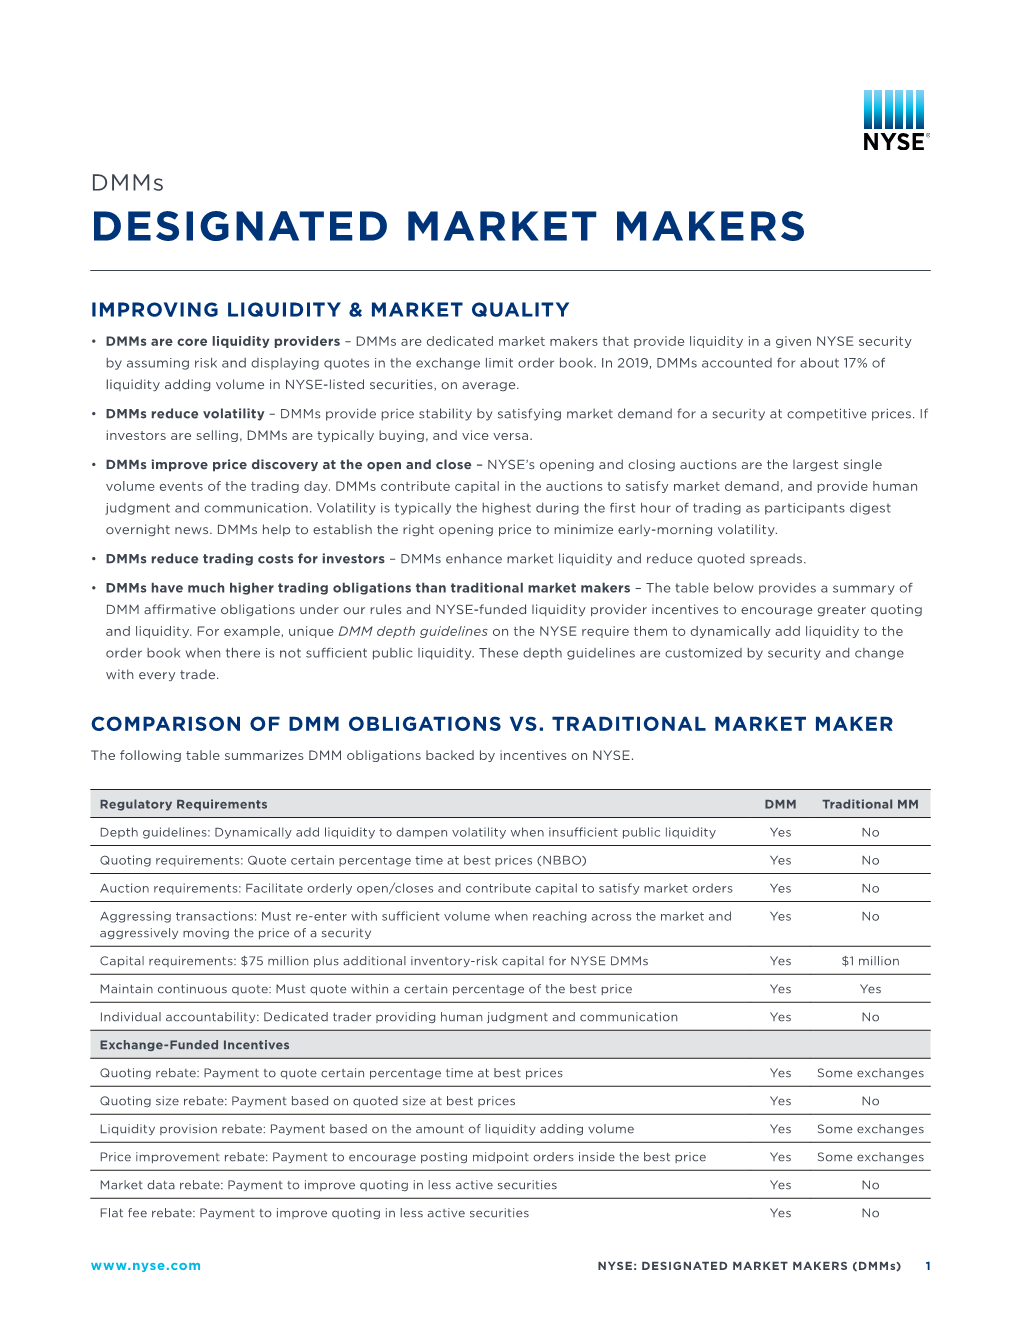 Designated Market Makers